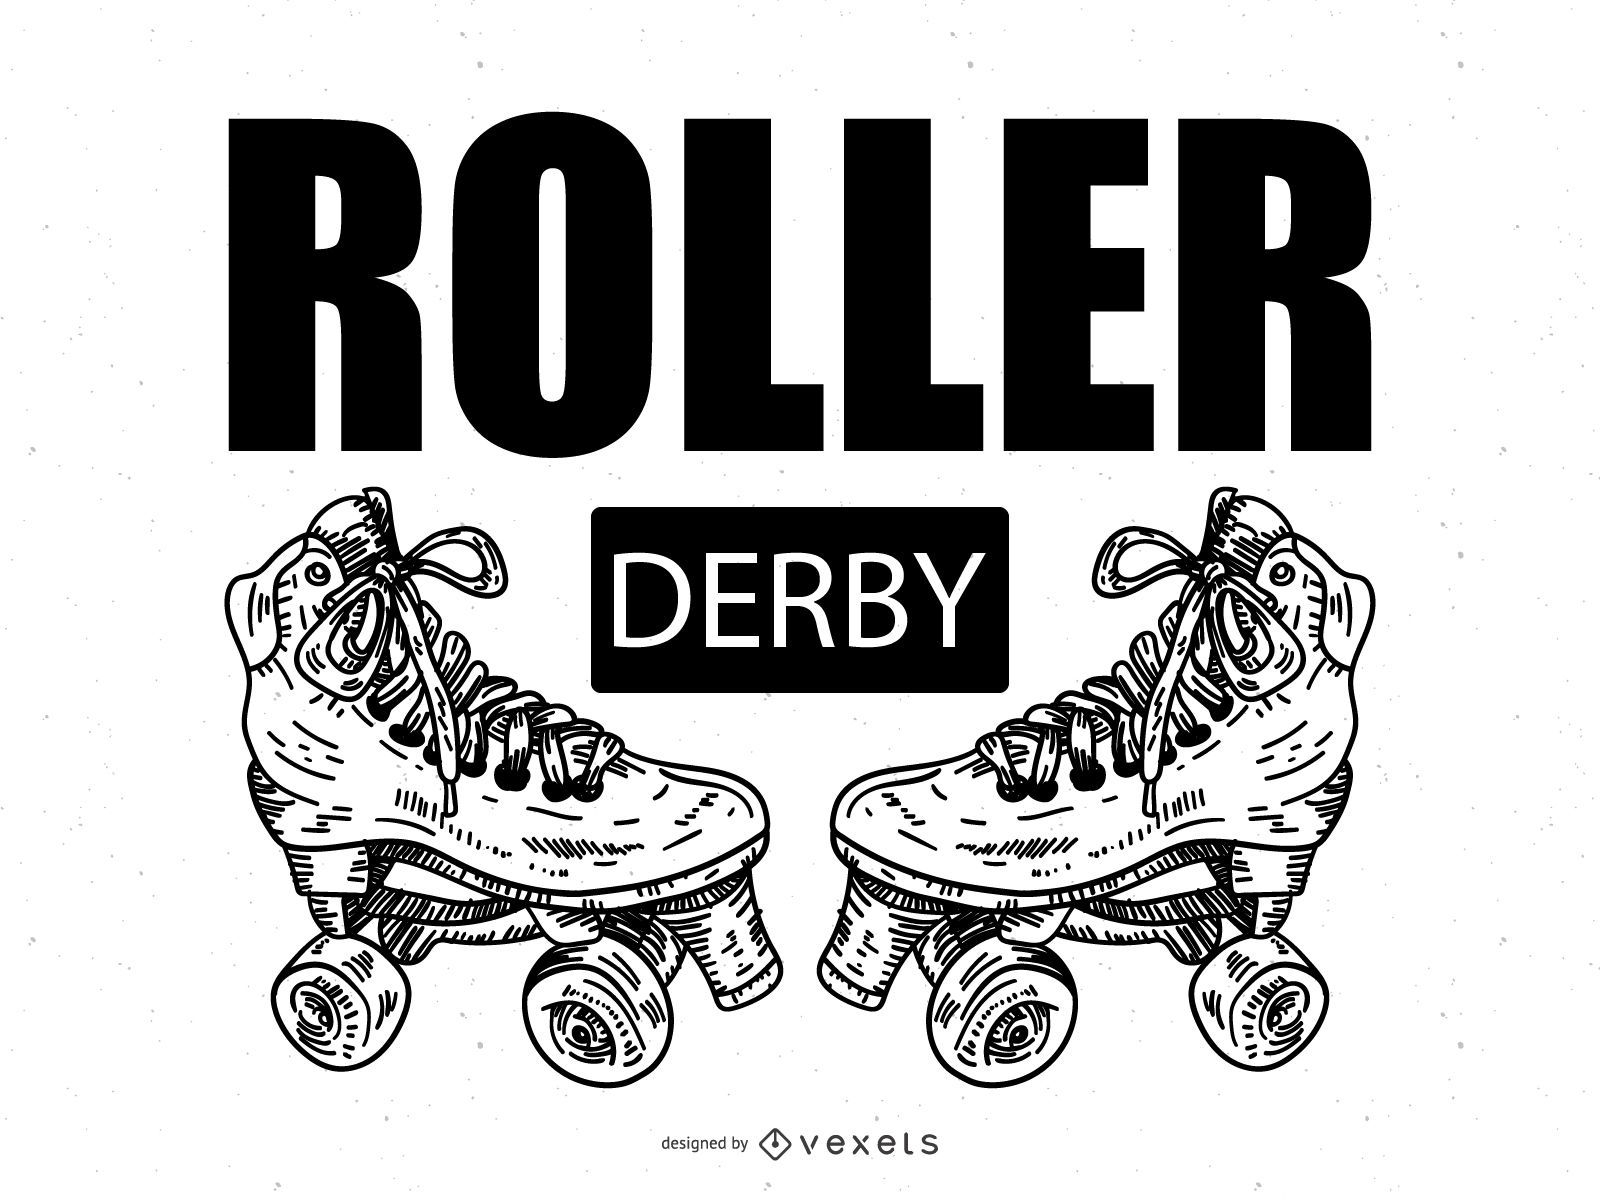 Ilustração do Derby de patins